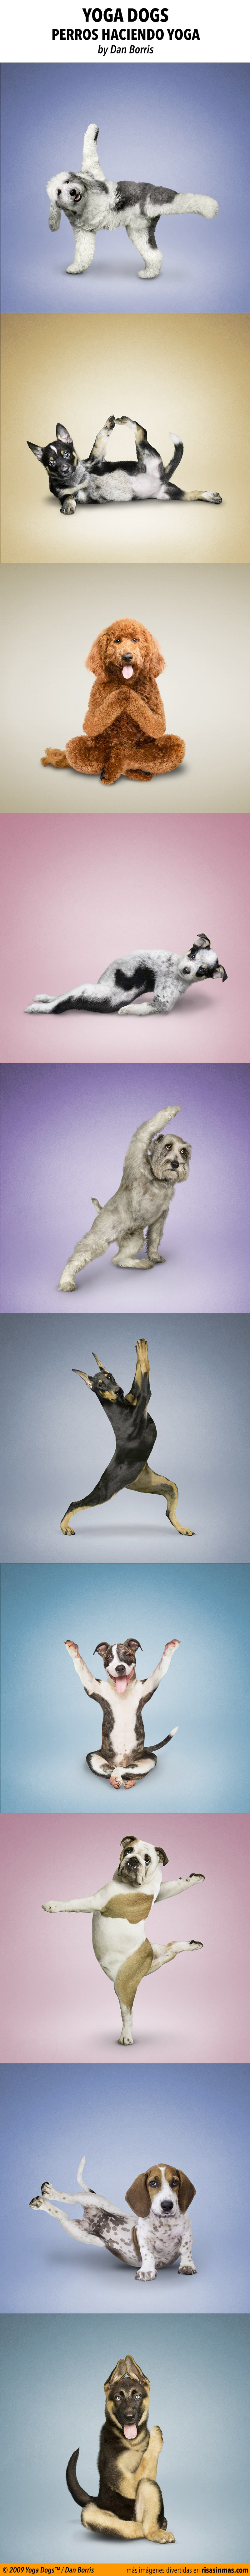 Yoga dogs, perros haciendo yoga